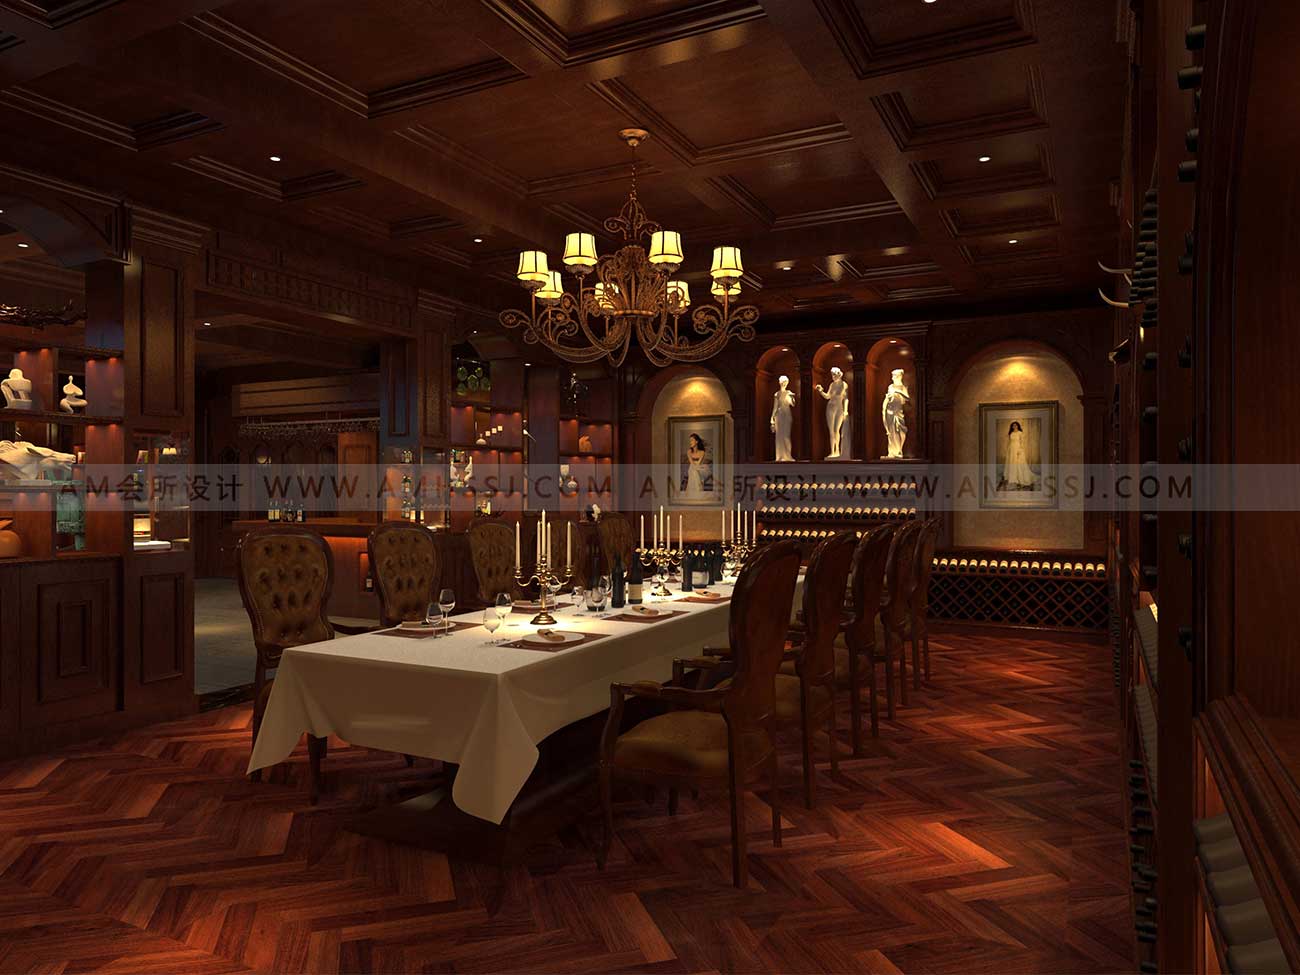 AM DESIGN | Design of Dingsheng Club Restaurant